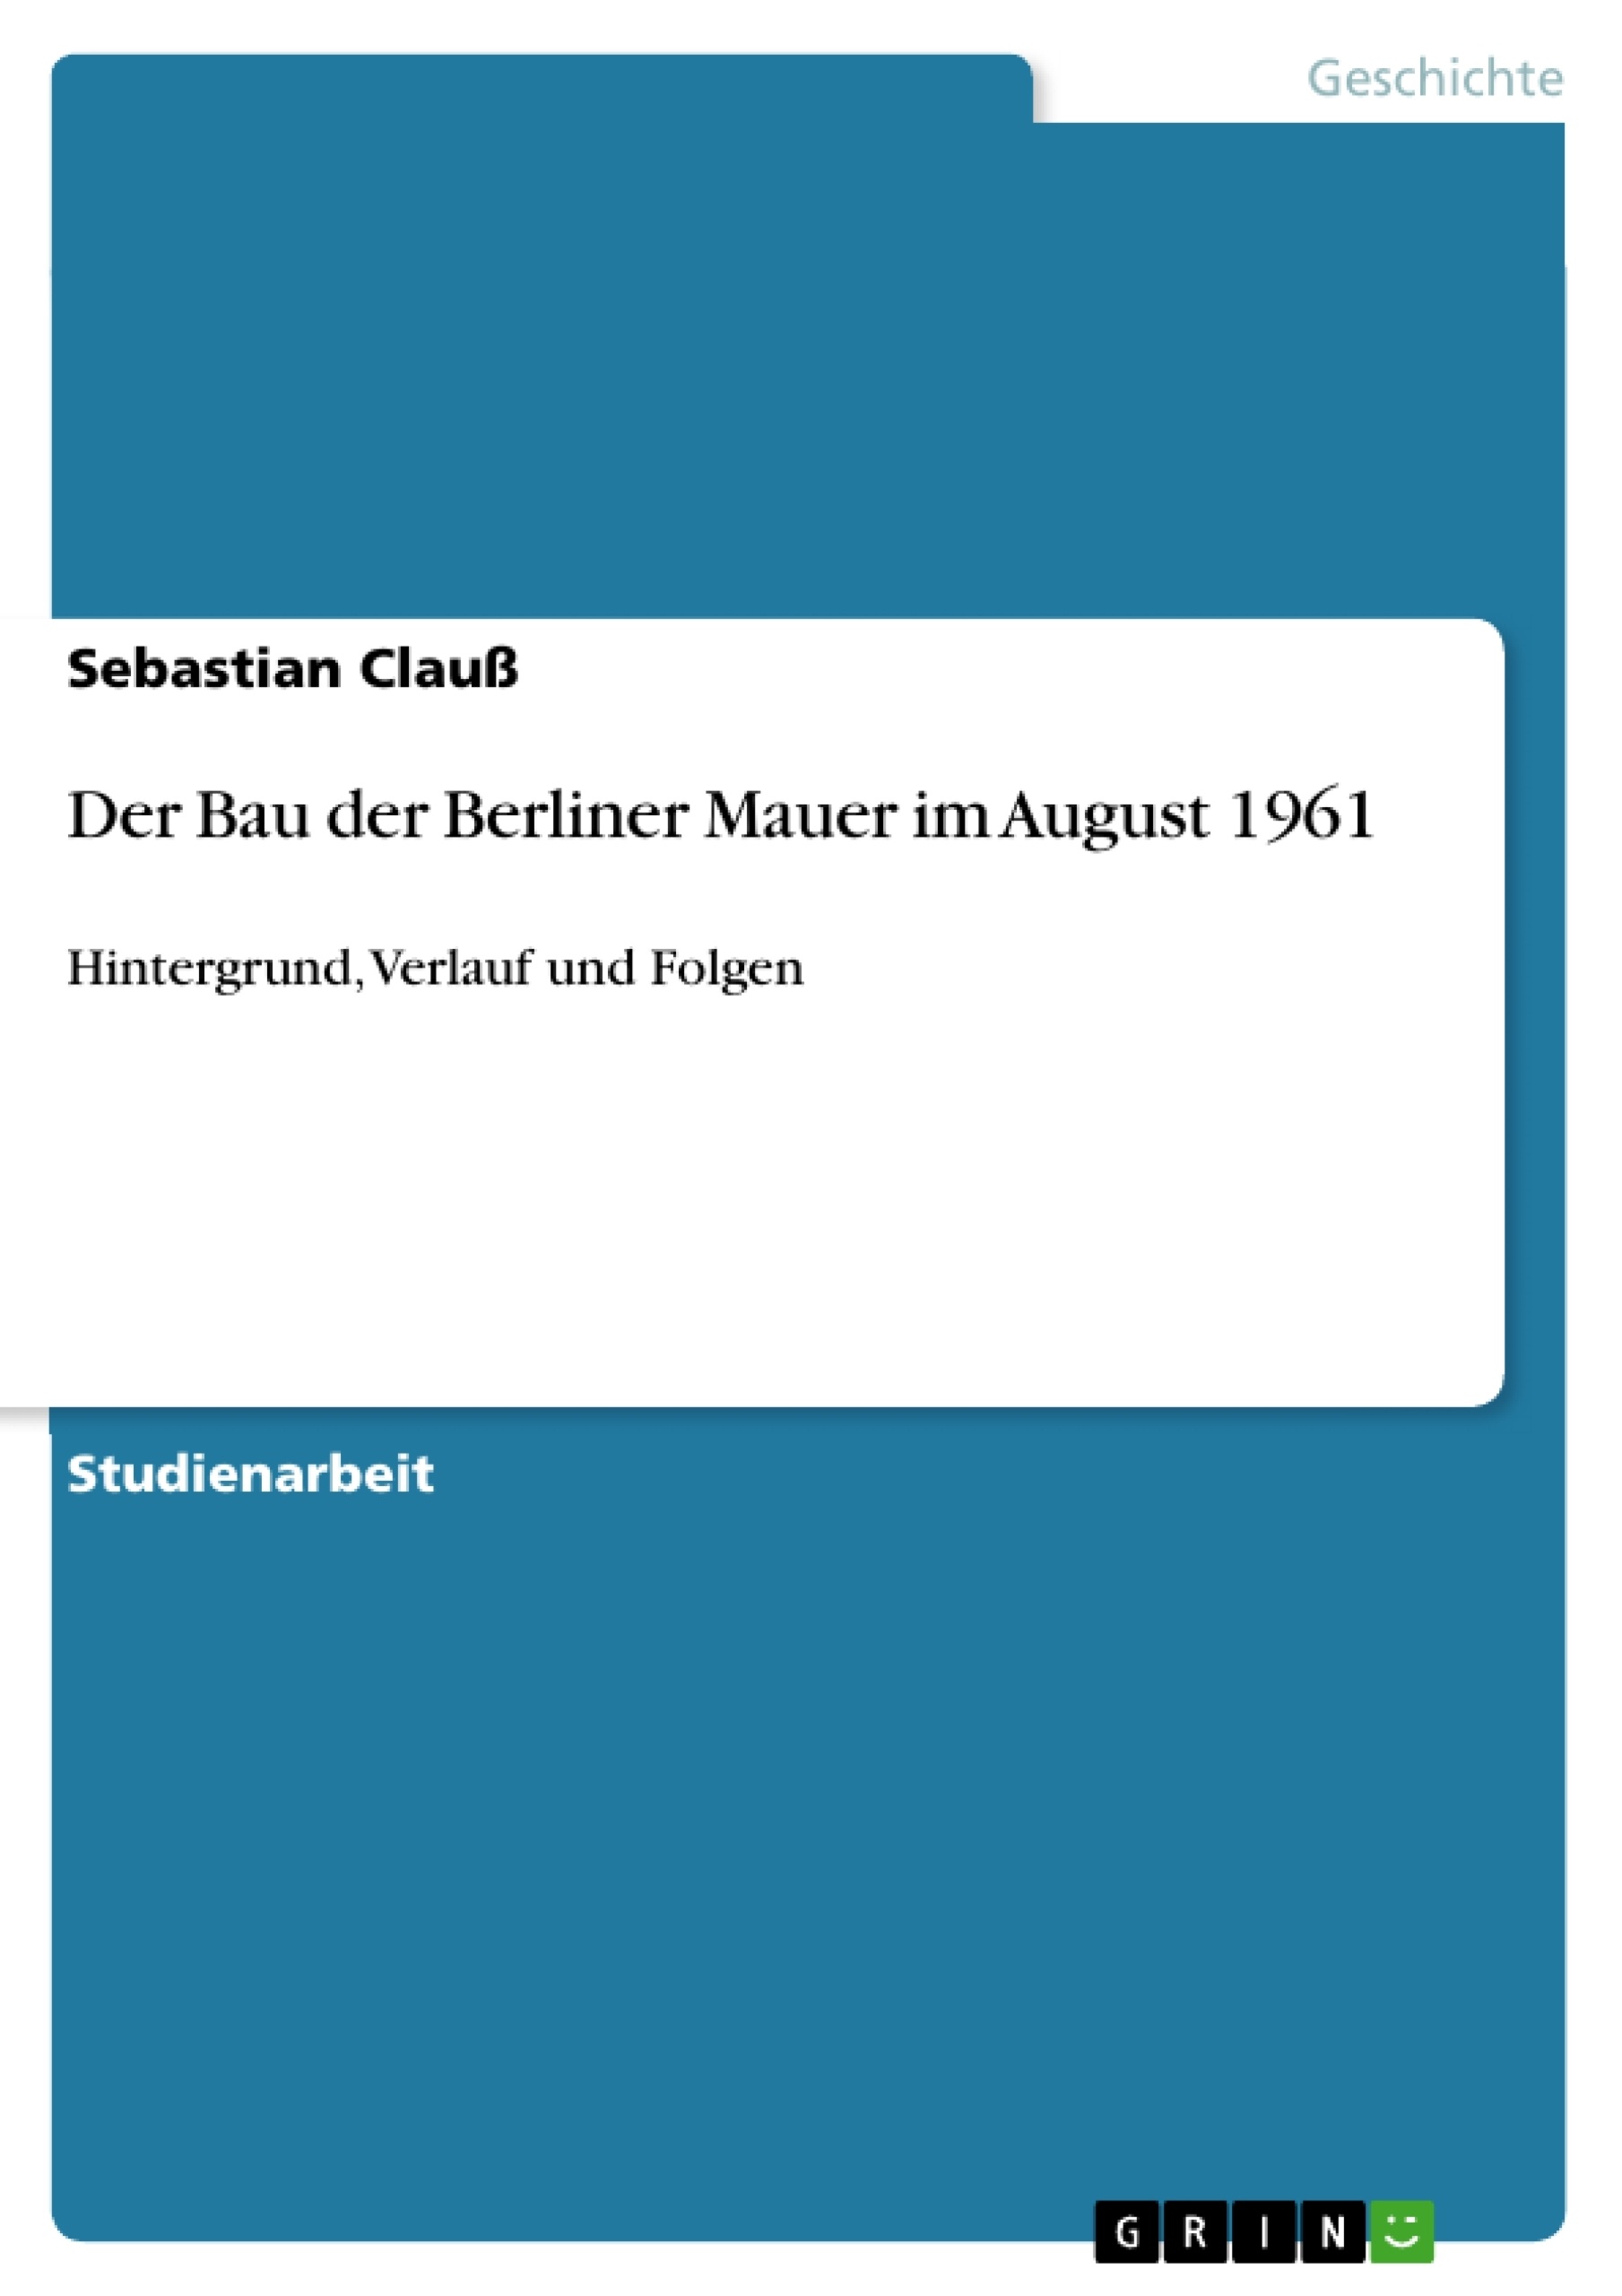 Título: Der Bau der Berliner Mauer im August 1961